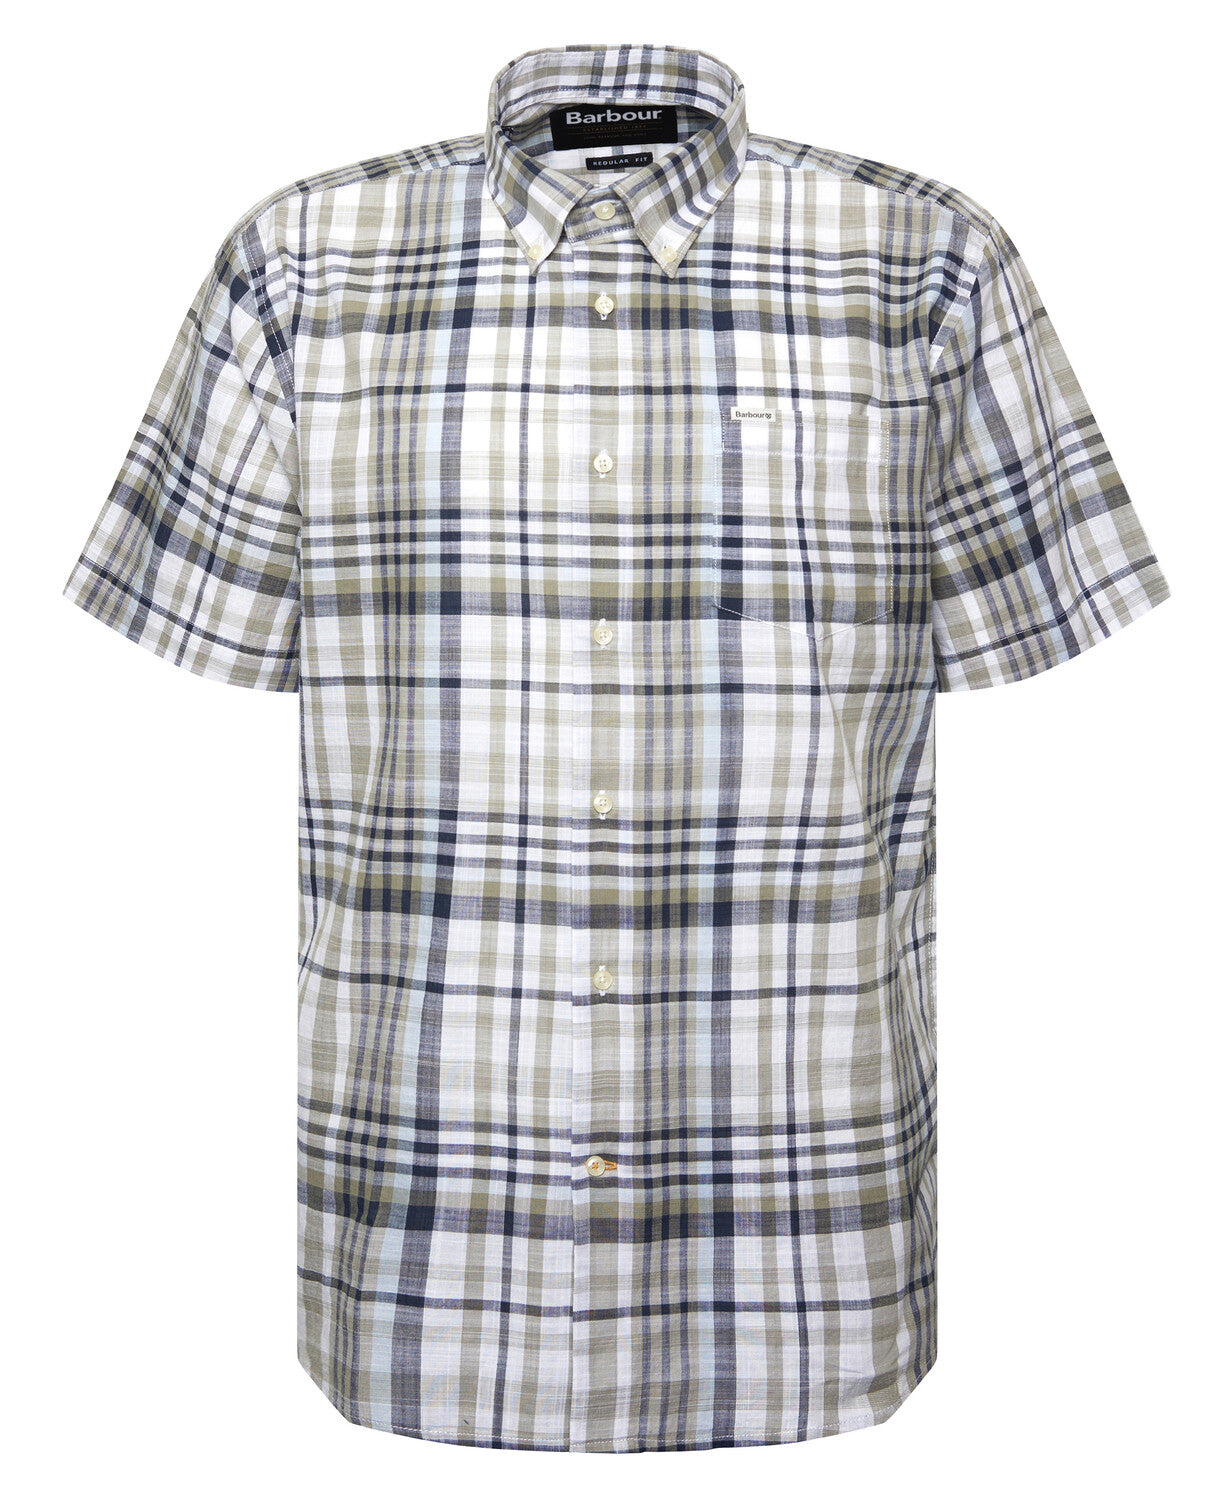 Barbour Hartley Regular Short Sleeve Shirt - Olive